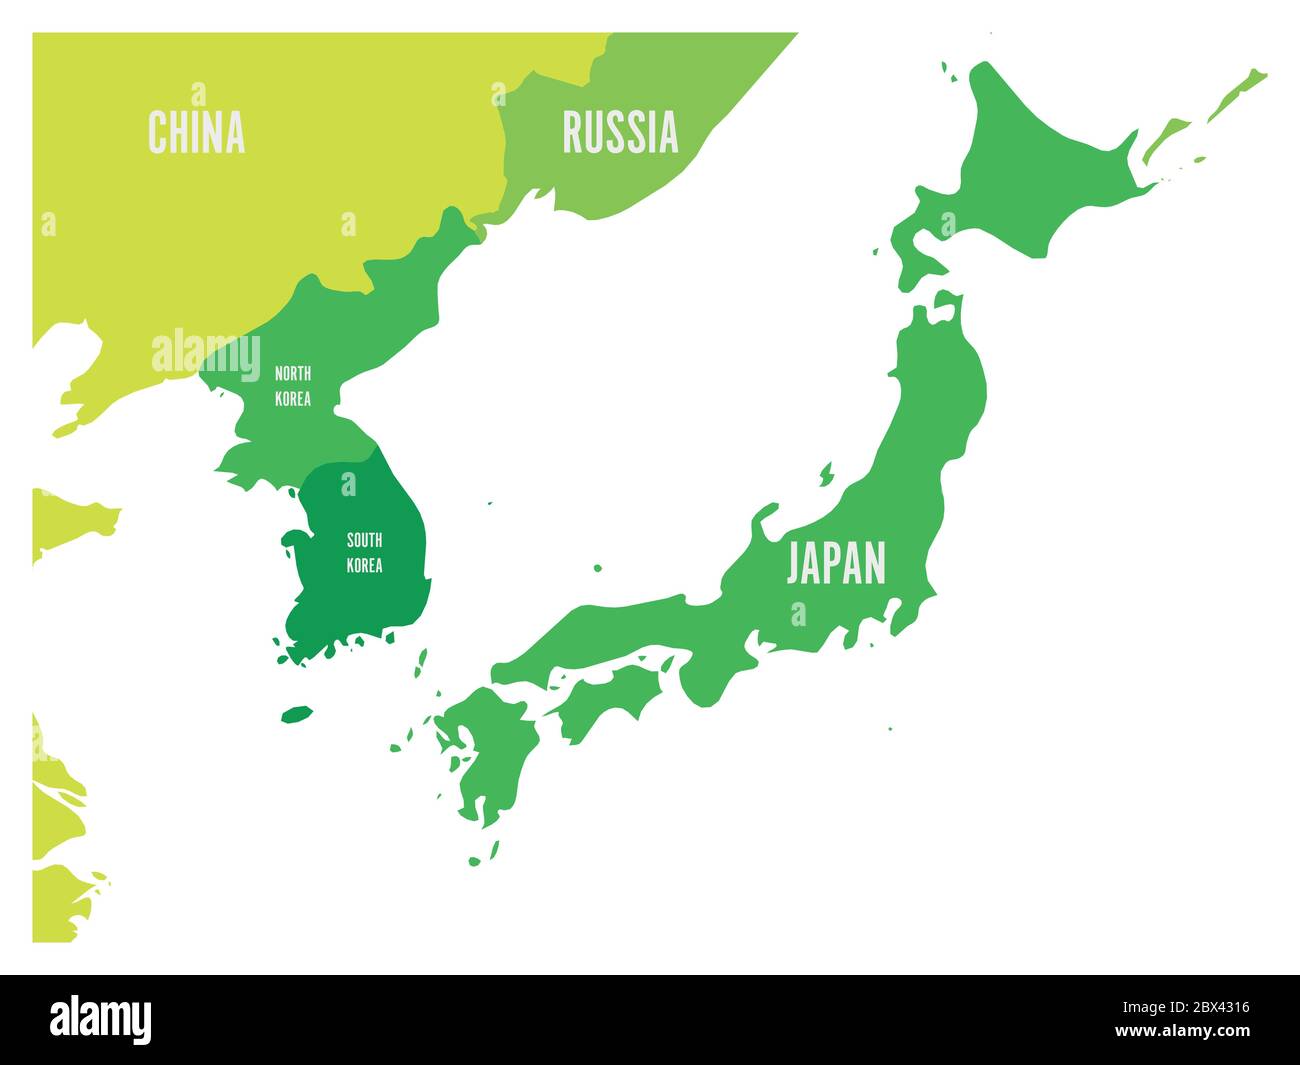 Politische Karte der koreanischen und japanischen Region, Südkorea, Nordkorea und Japan. Grüne Karte mit weißer Beschriftung auf weißem Hintergrund. Vektorgrafik. Stock Vektor